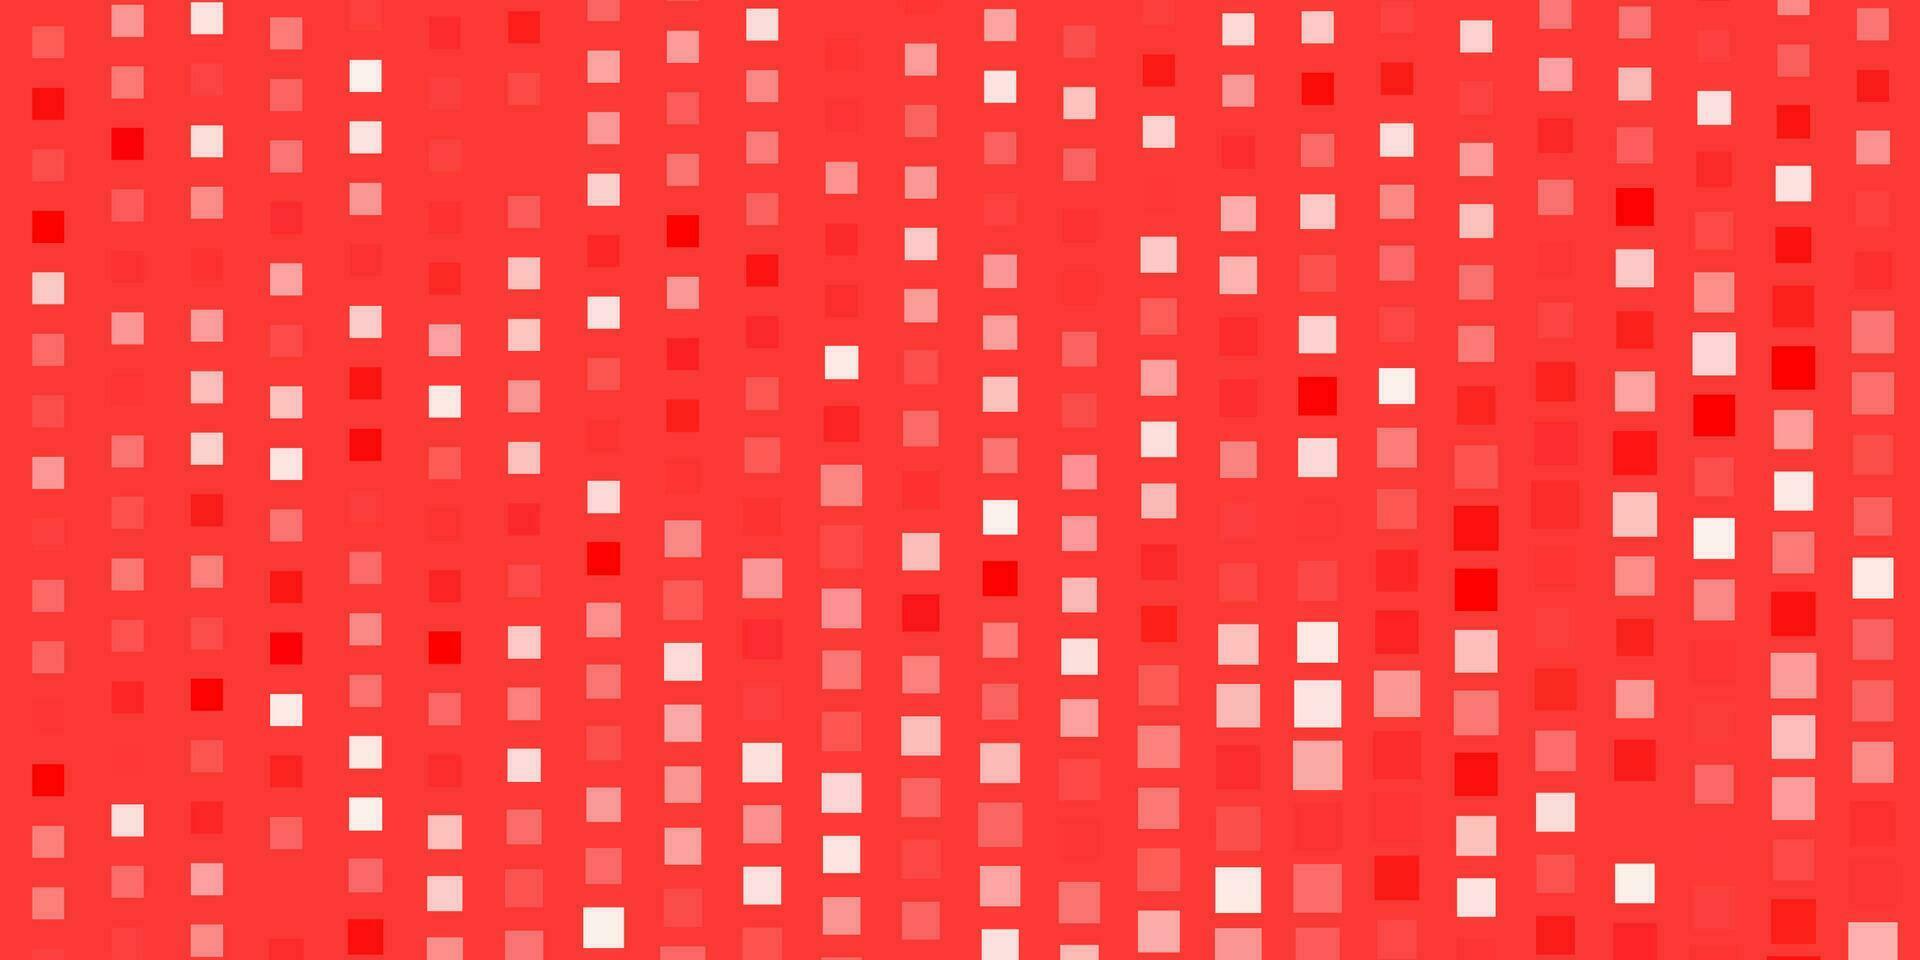 plantilla de vector rojo claro con rectángulos.